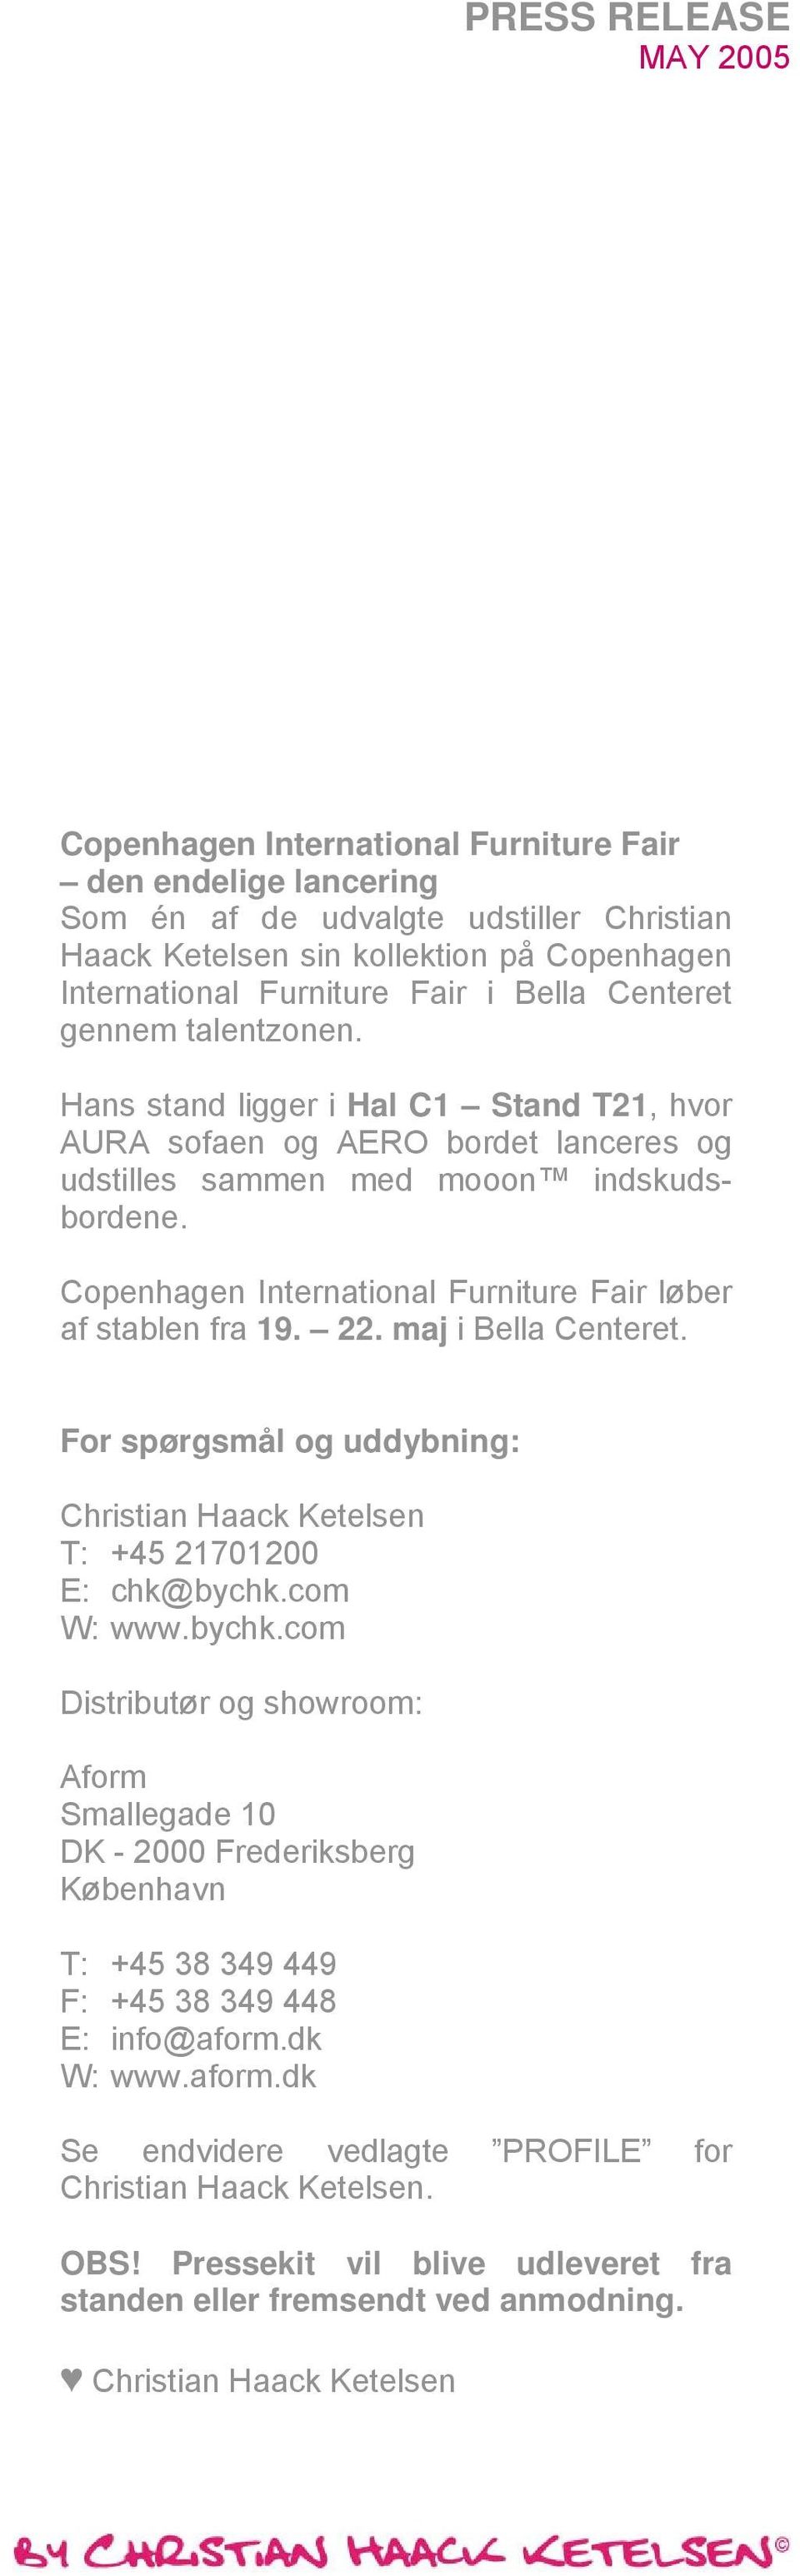 Copenhagen International Furniture Fair løber af stablen fra 19. 22. maj i Bella Centeret. For spørgsmål og uddybning: Christian Haack Ketelsen T: +45 21701200 E: chk@bychk.